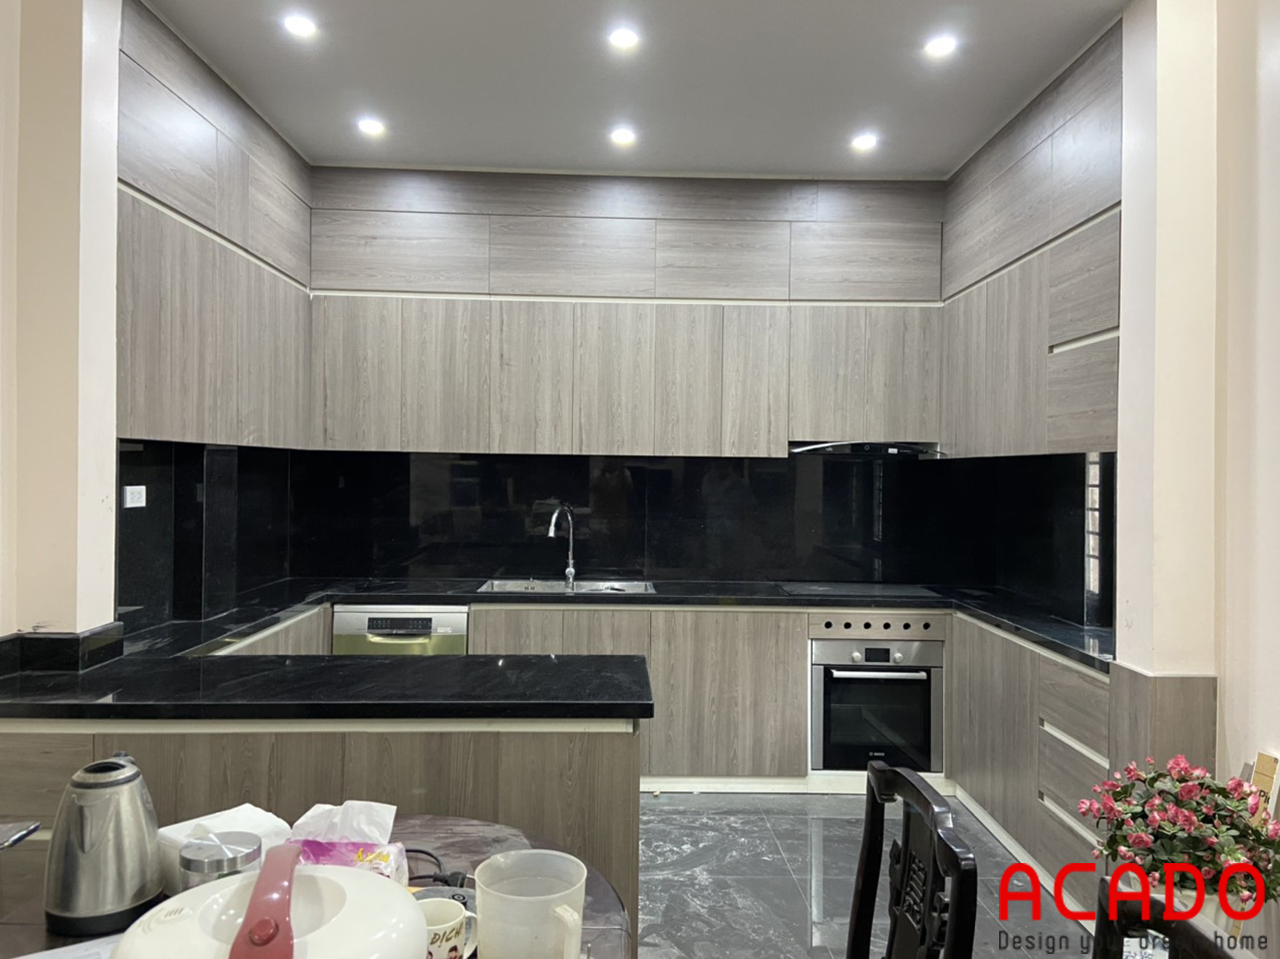 ACADO chuyên thiết kế và thi công tủ bếp uy tín - chất lượng tại Hà Nội